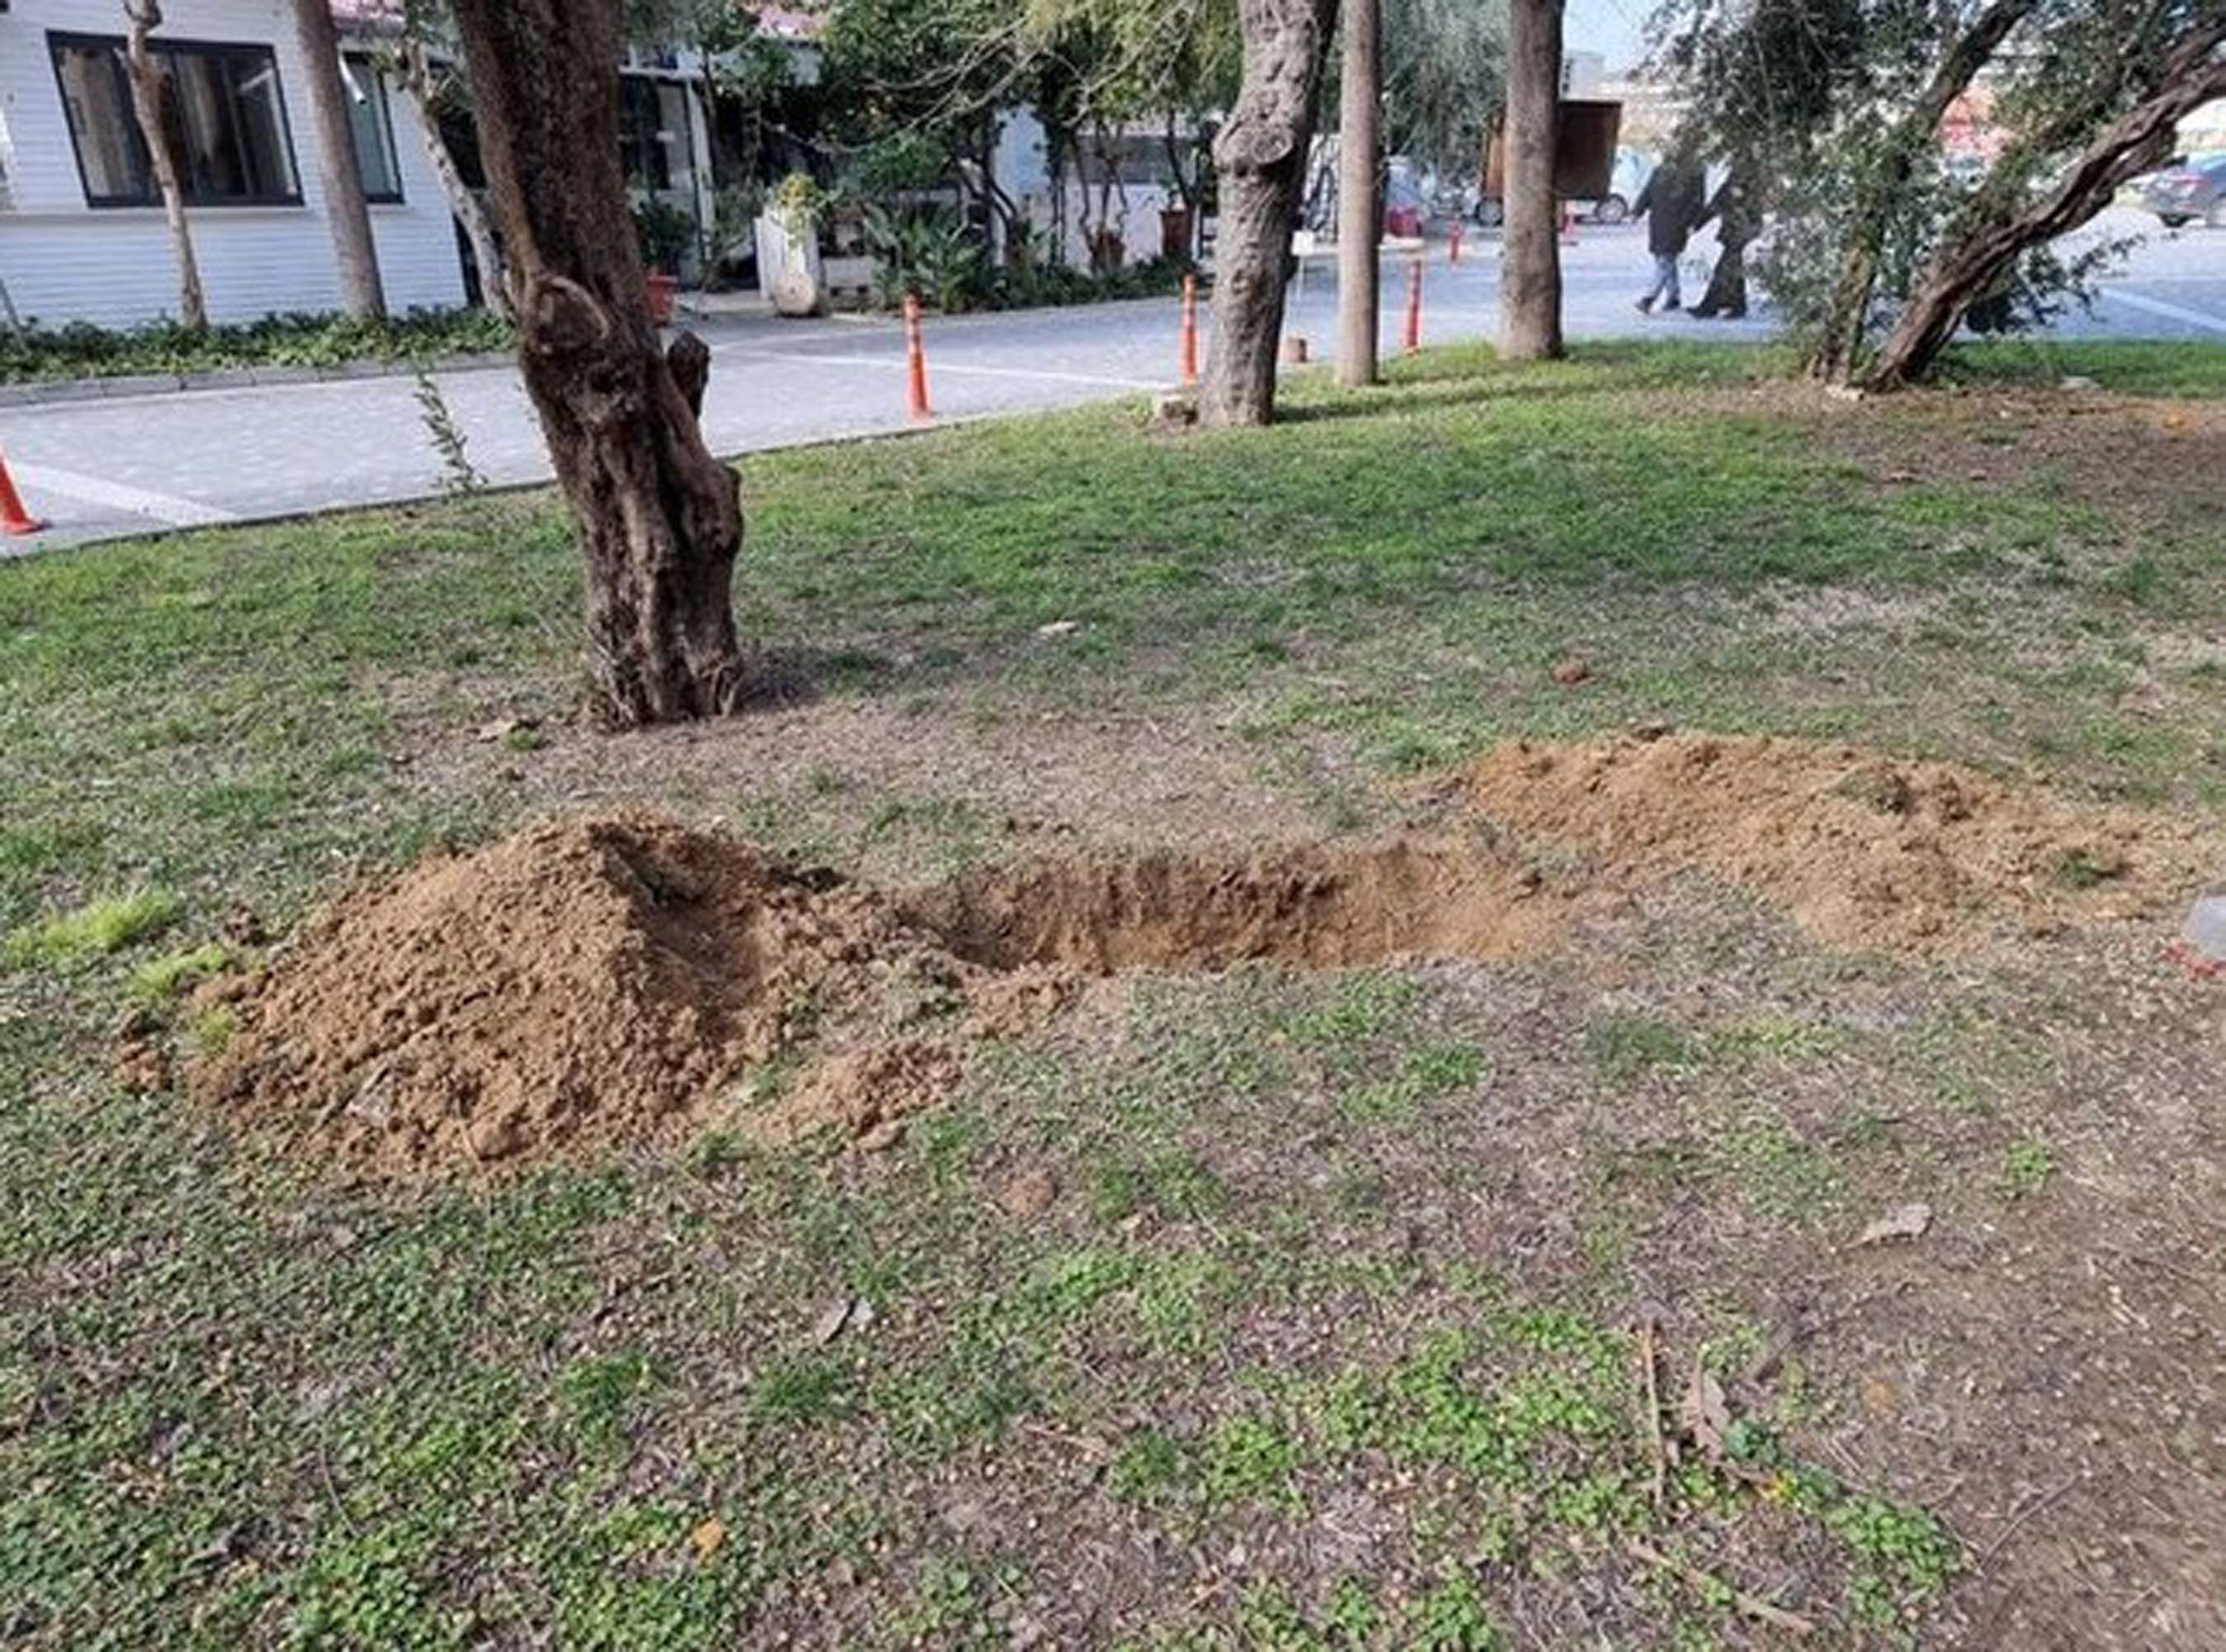 Antalya'da beyin yakan olay! Bir kadın, sevgilisini erkek arkadaşından kıskandı! Gay olduğunu düşünerek öldürüp, cinsel organını kesti!